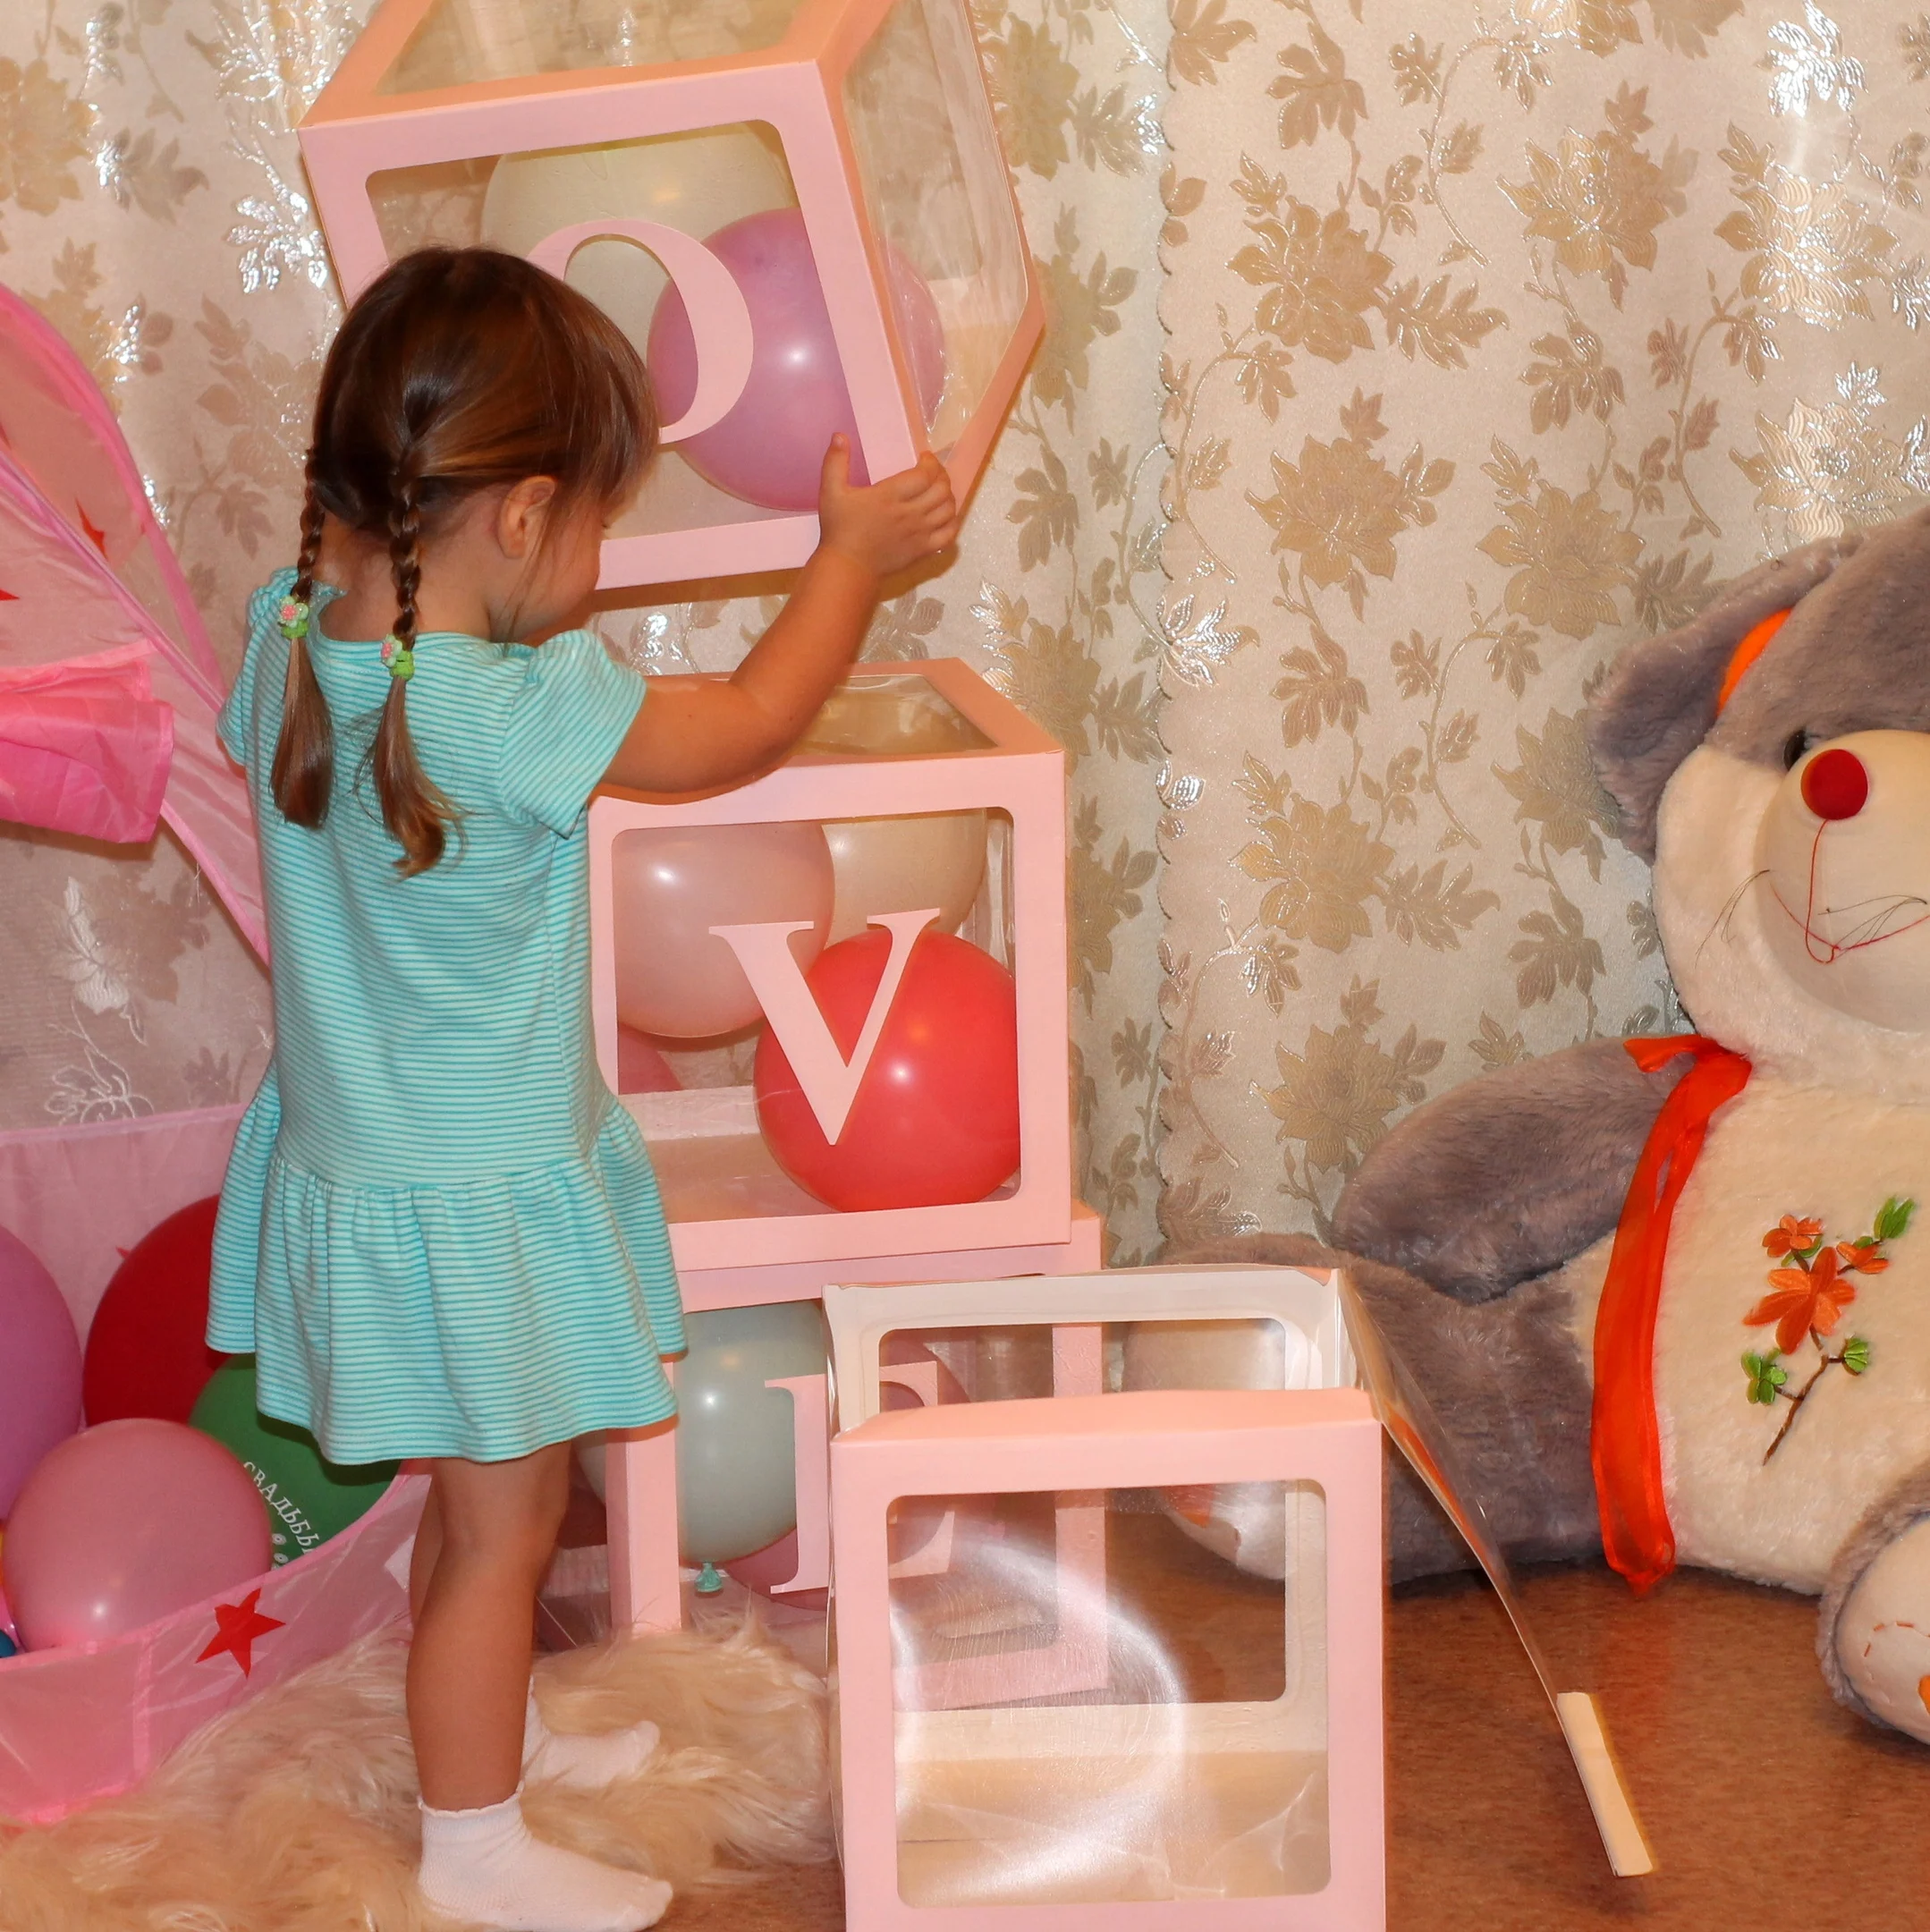 Baby Love прозрачная коробка блок Беби Шауэр детский день рождения украшения розовые/белые воздушные шары с конфетти коробка детское украшение для душа